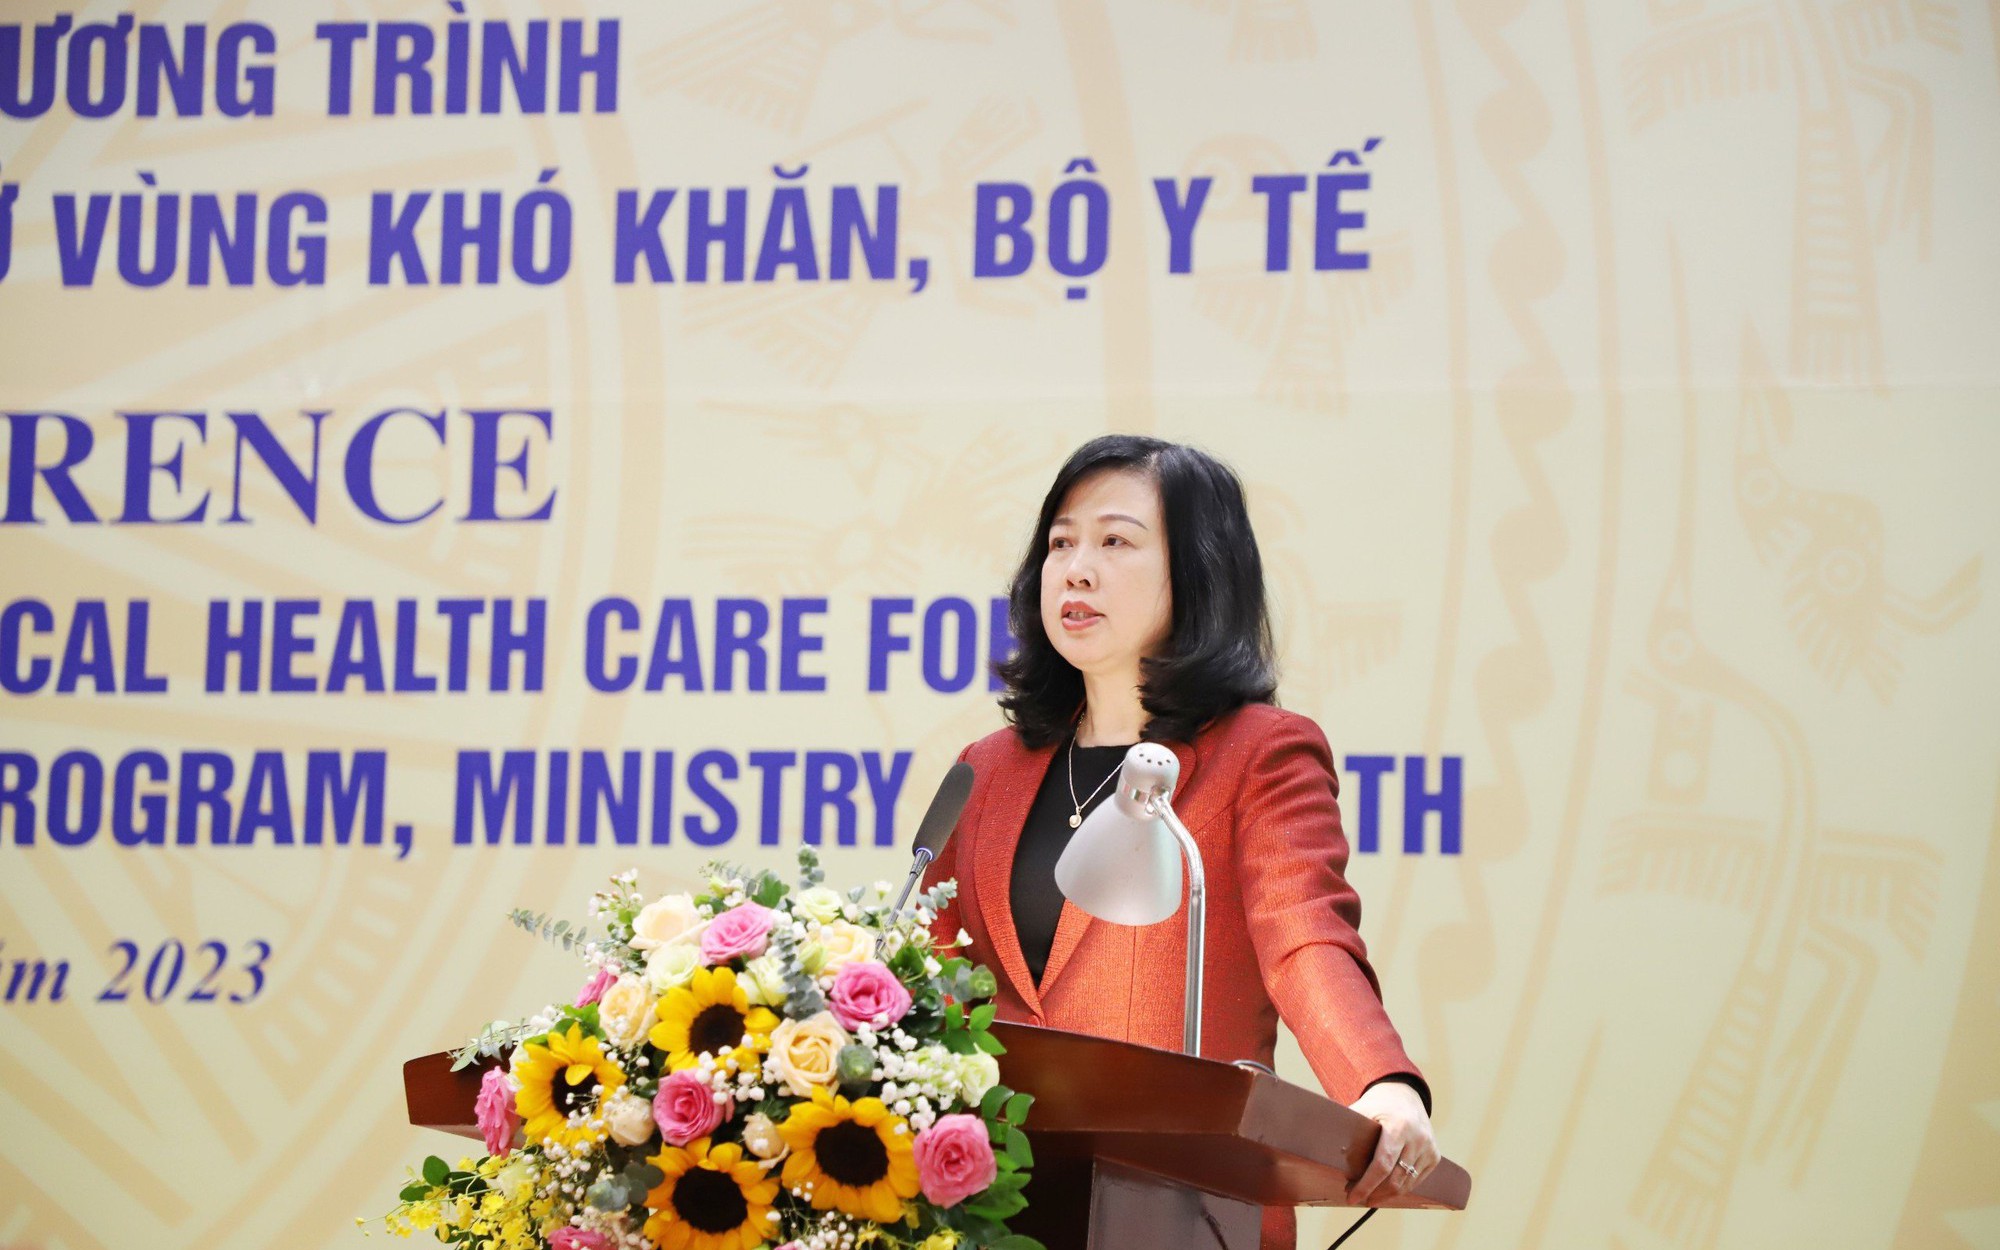 Bộ trưởng Bộ Y tế: Thêm nguồn lực để y tế cơ sở làm tốt hơn công tác chăm sóc sức khoẻ ban đầu